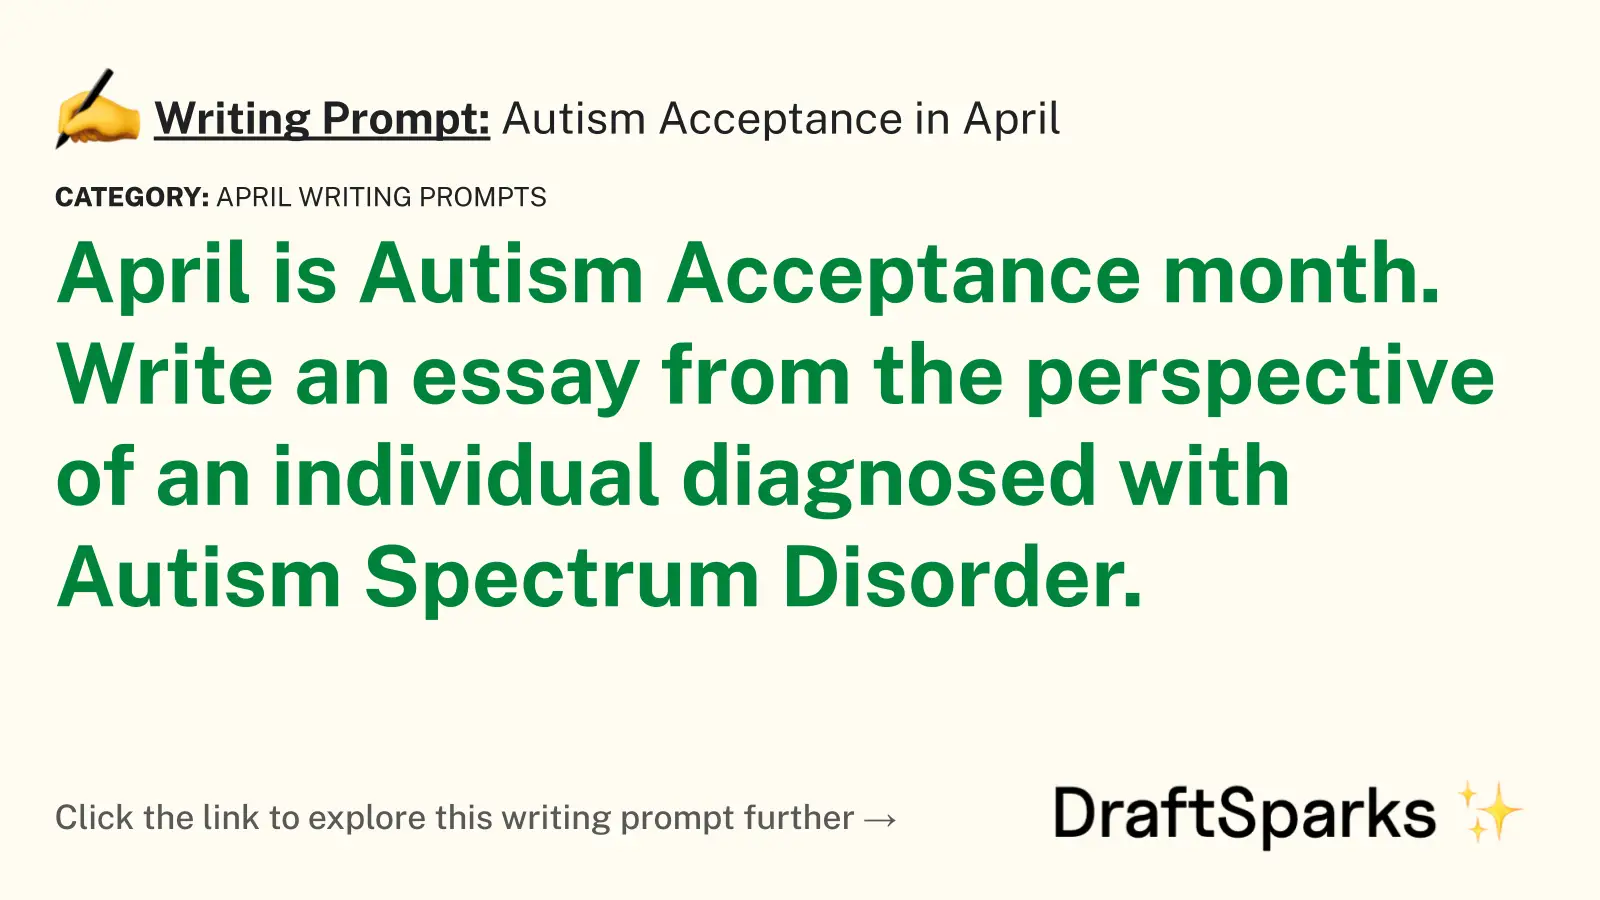 Autism Acceptance in April